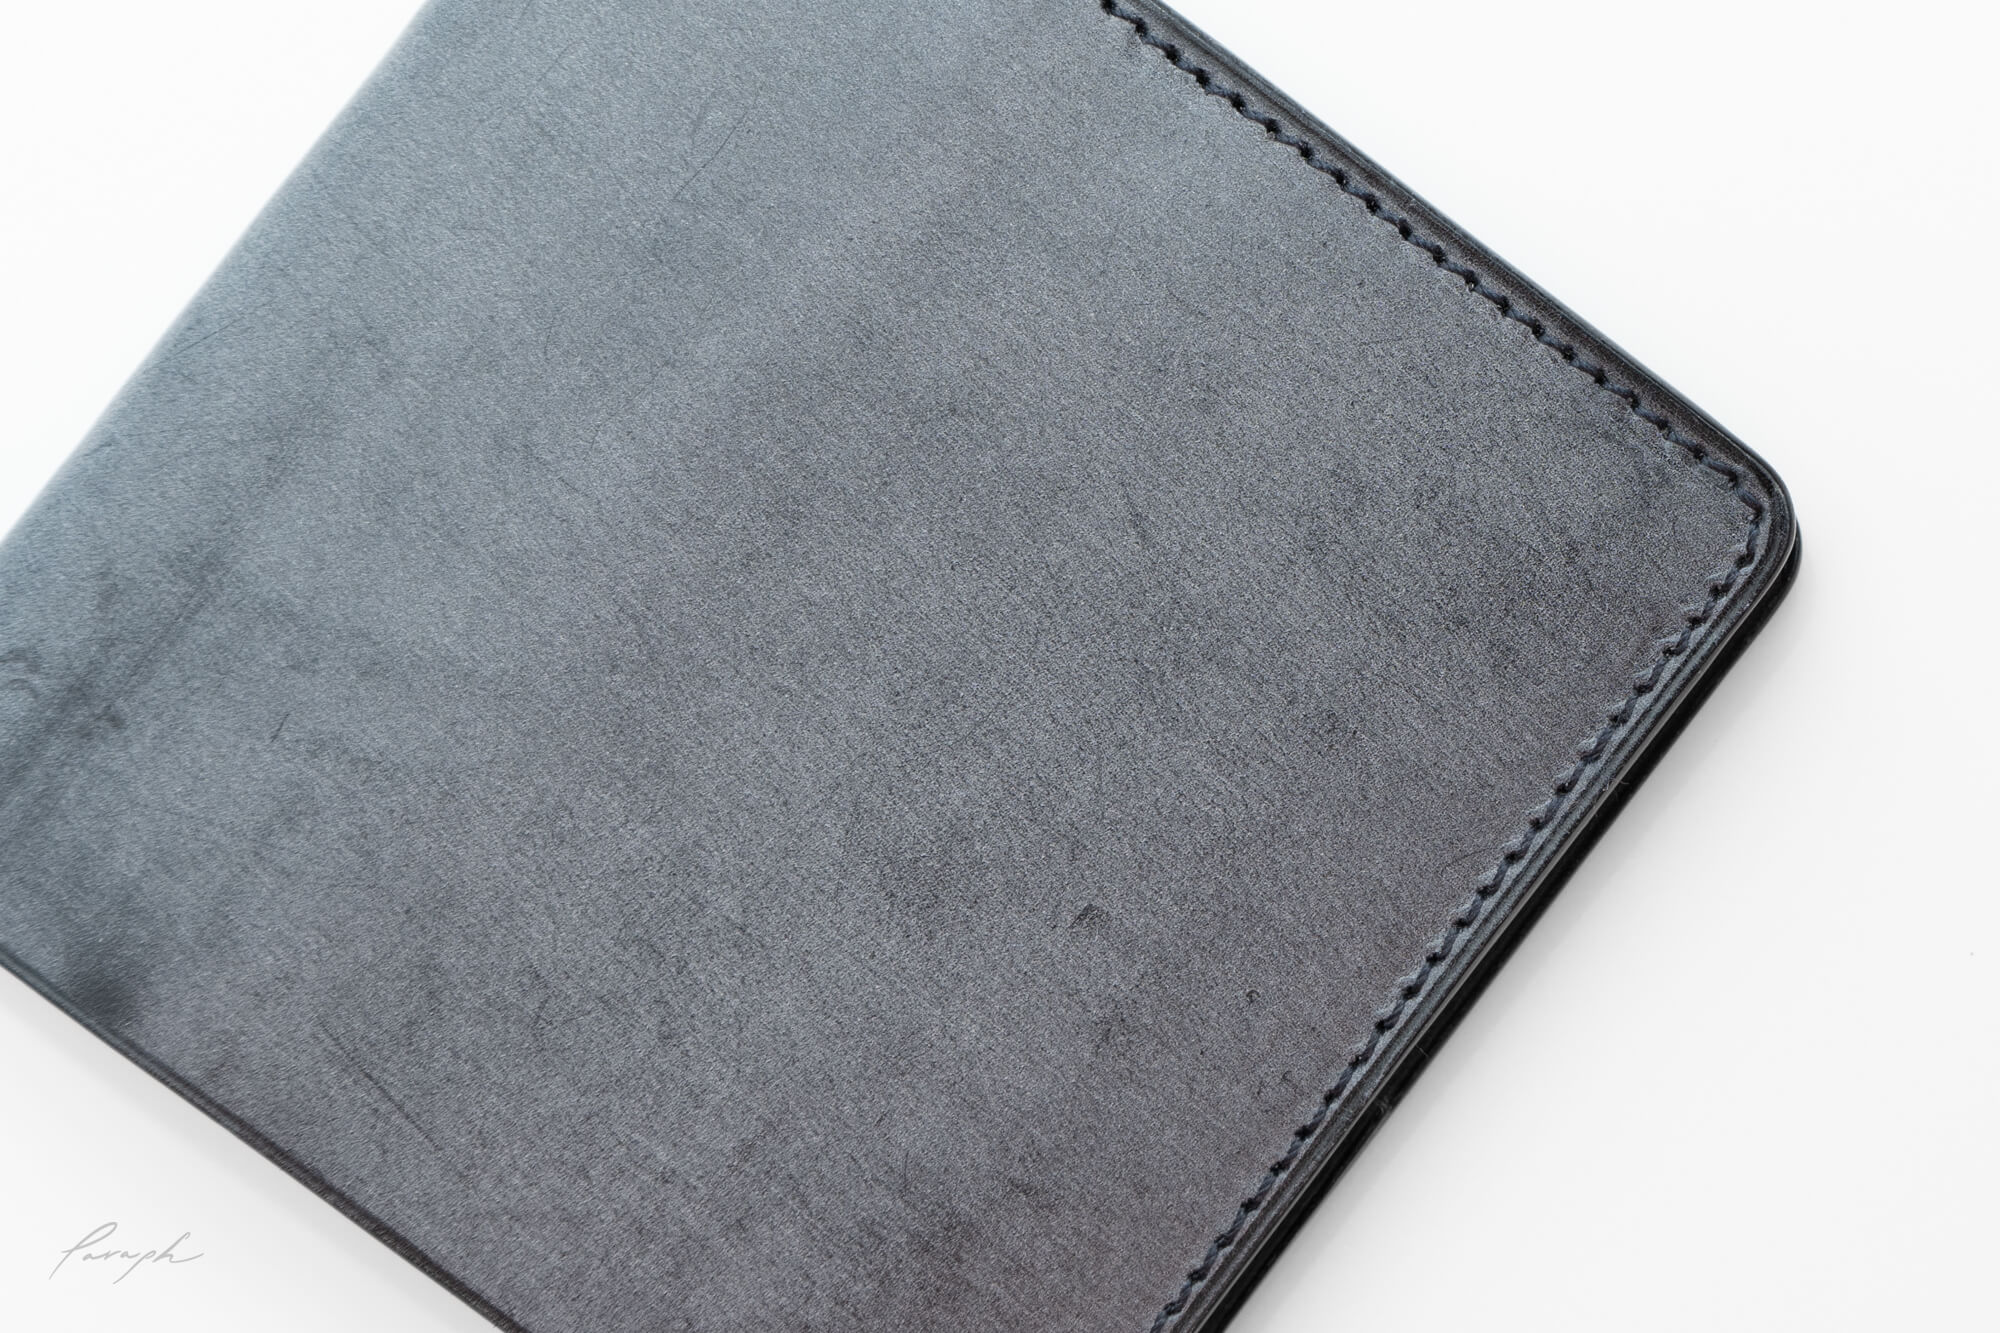 やっと出会えた最高の財布。究極の薄さを追求したミニマリスト必見の上質レザー財布「SYRINX Hitoe® Fold Less」先行レビュー